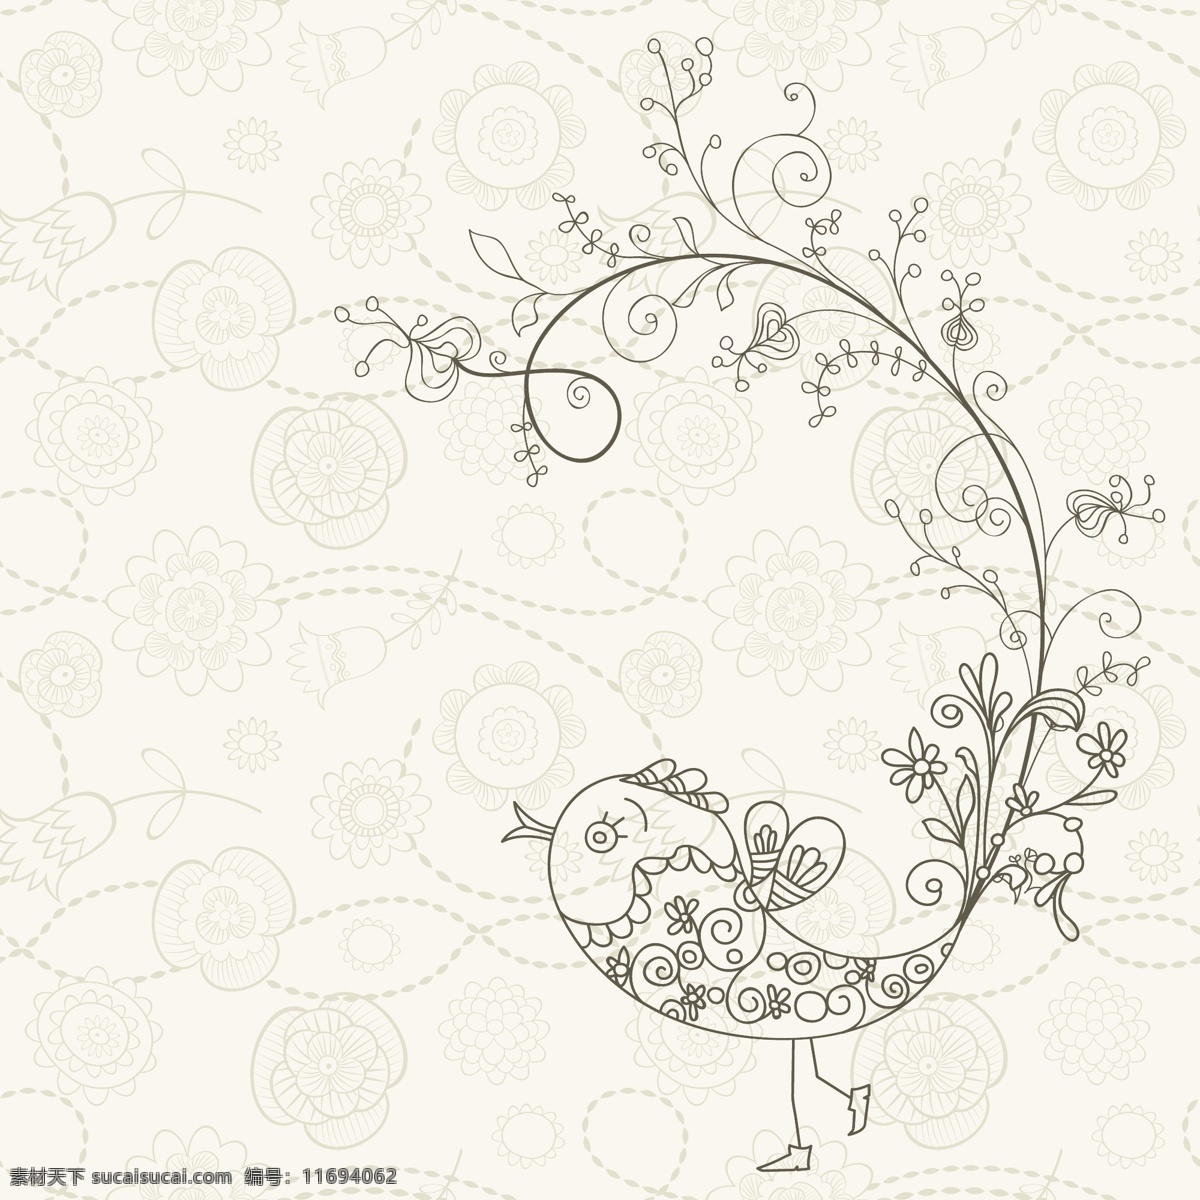 素雅 花纹 小鸟 矢量 手绘 线描 鸟类 花卉 花朵 植物 底纹 卡通 背景 海报 画册 矢量动物 生物世界